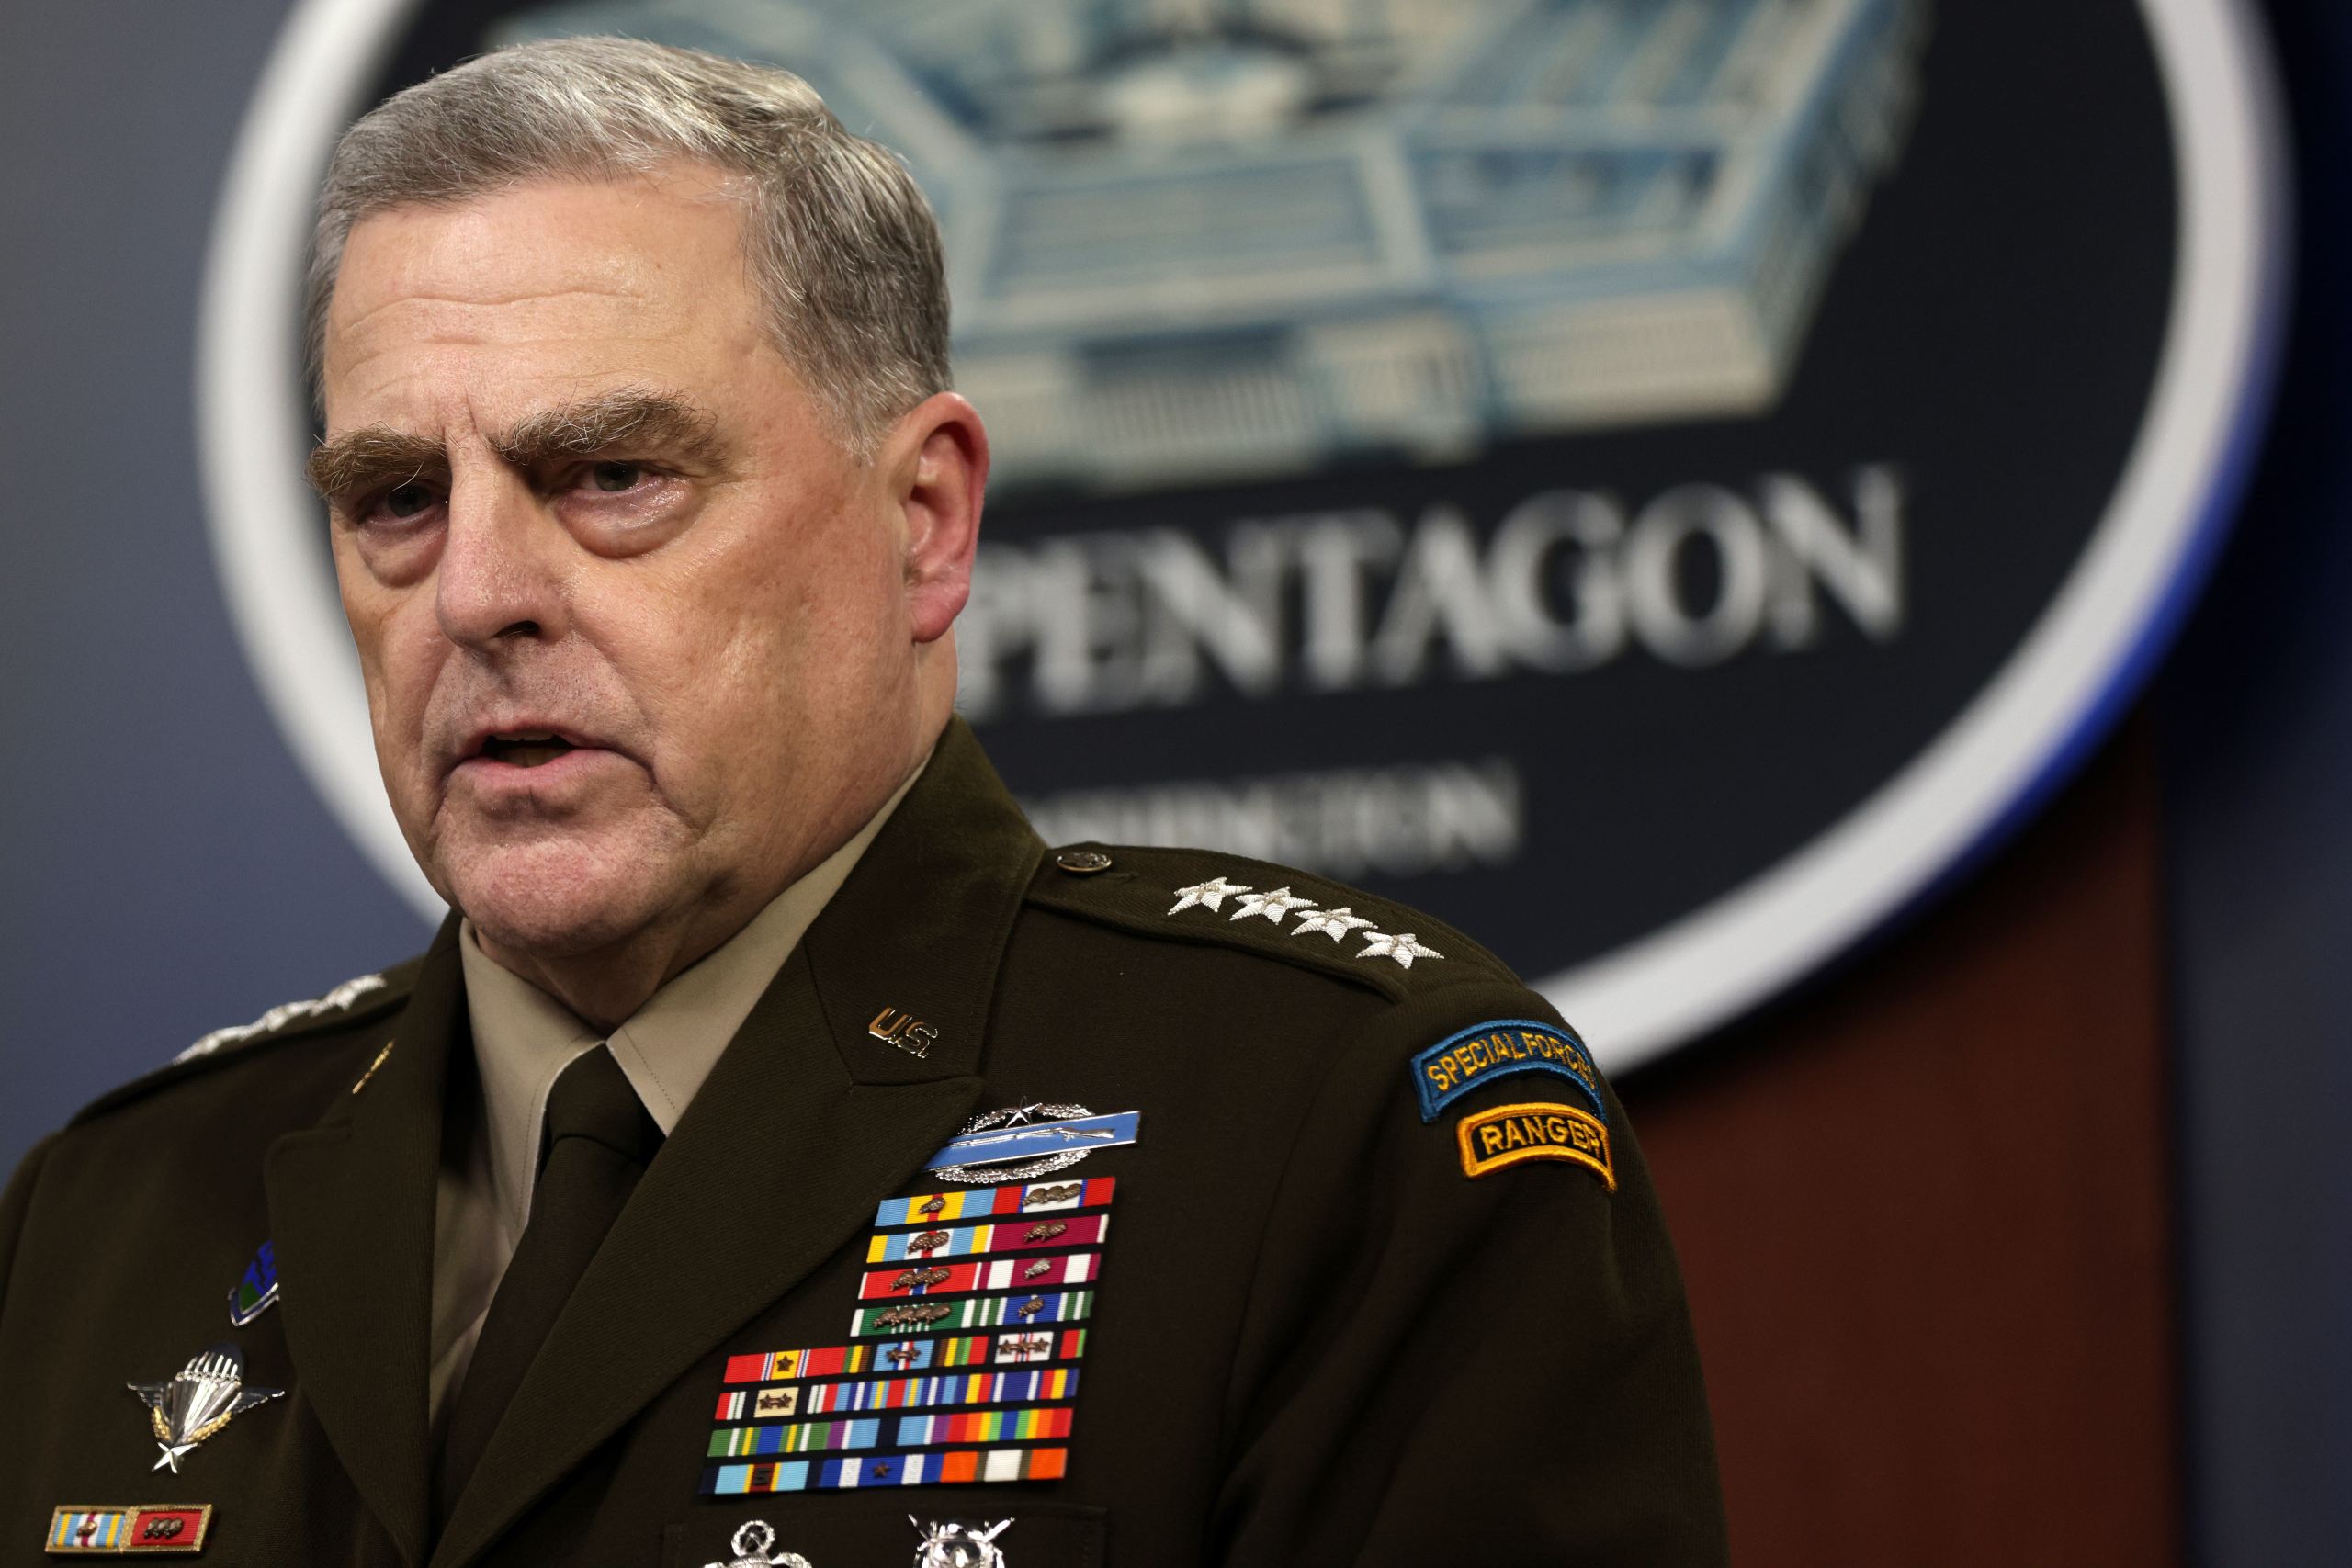 Defense Secretary Lloyd Austin And Army Secretary Gen. Mark Milley Hold Briefing At Pentagon